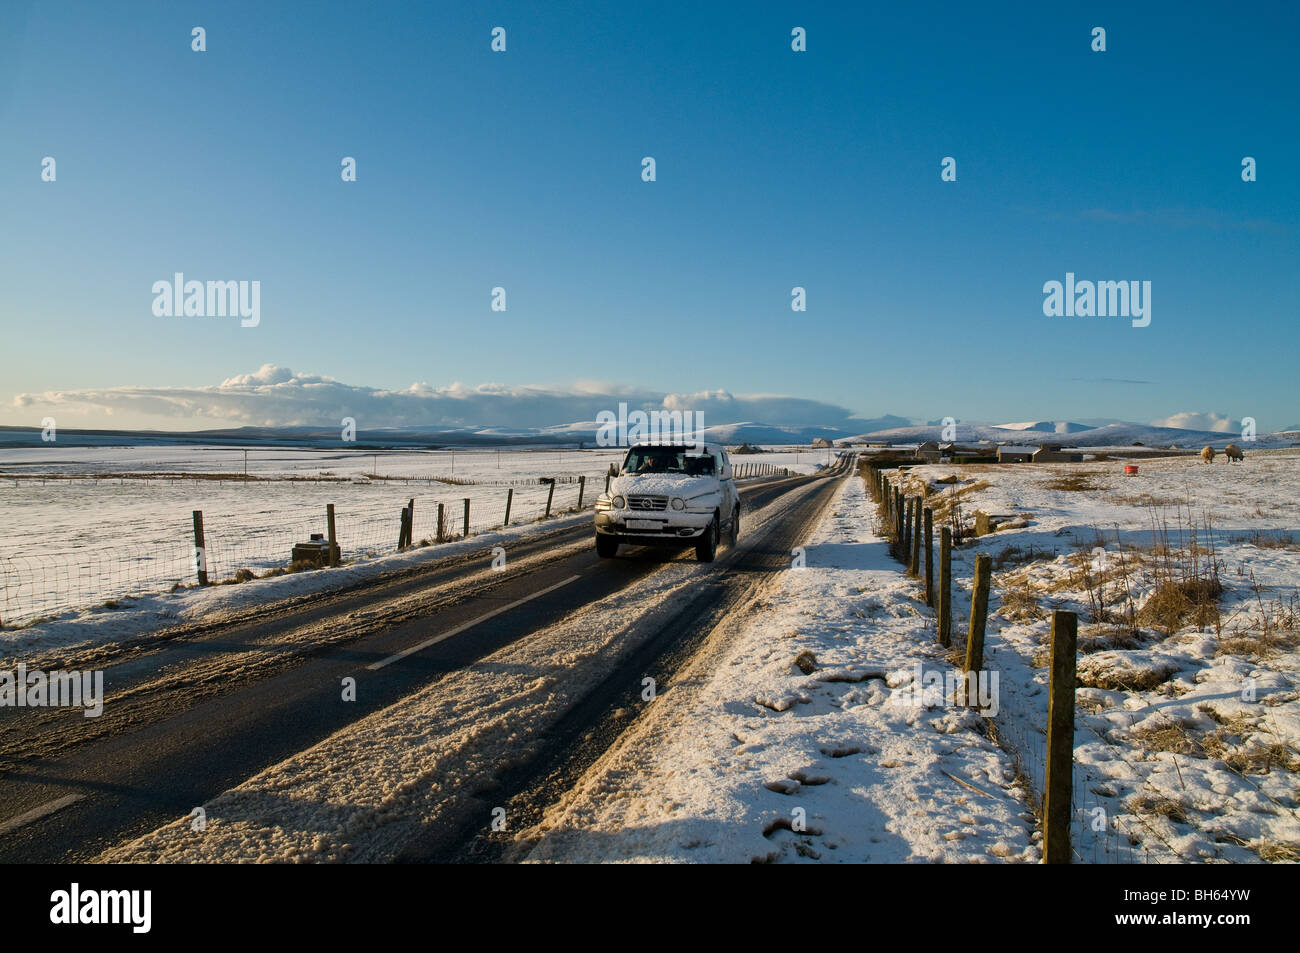 dh SUV veicolo 4x4 NEVE INVERNALE STRADE SCOZIA Auto guida sulla strada innevata inverni strada invernale ghiacciata rurale regno unito Foto Stock